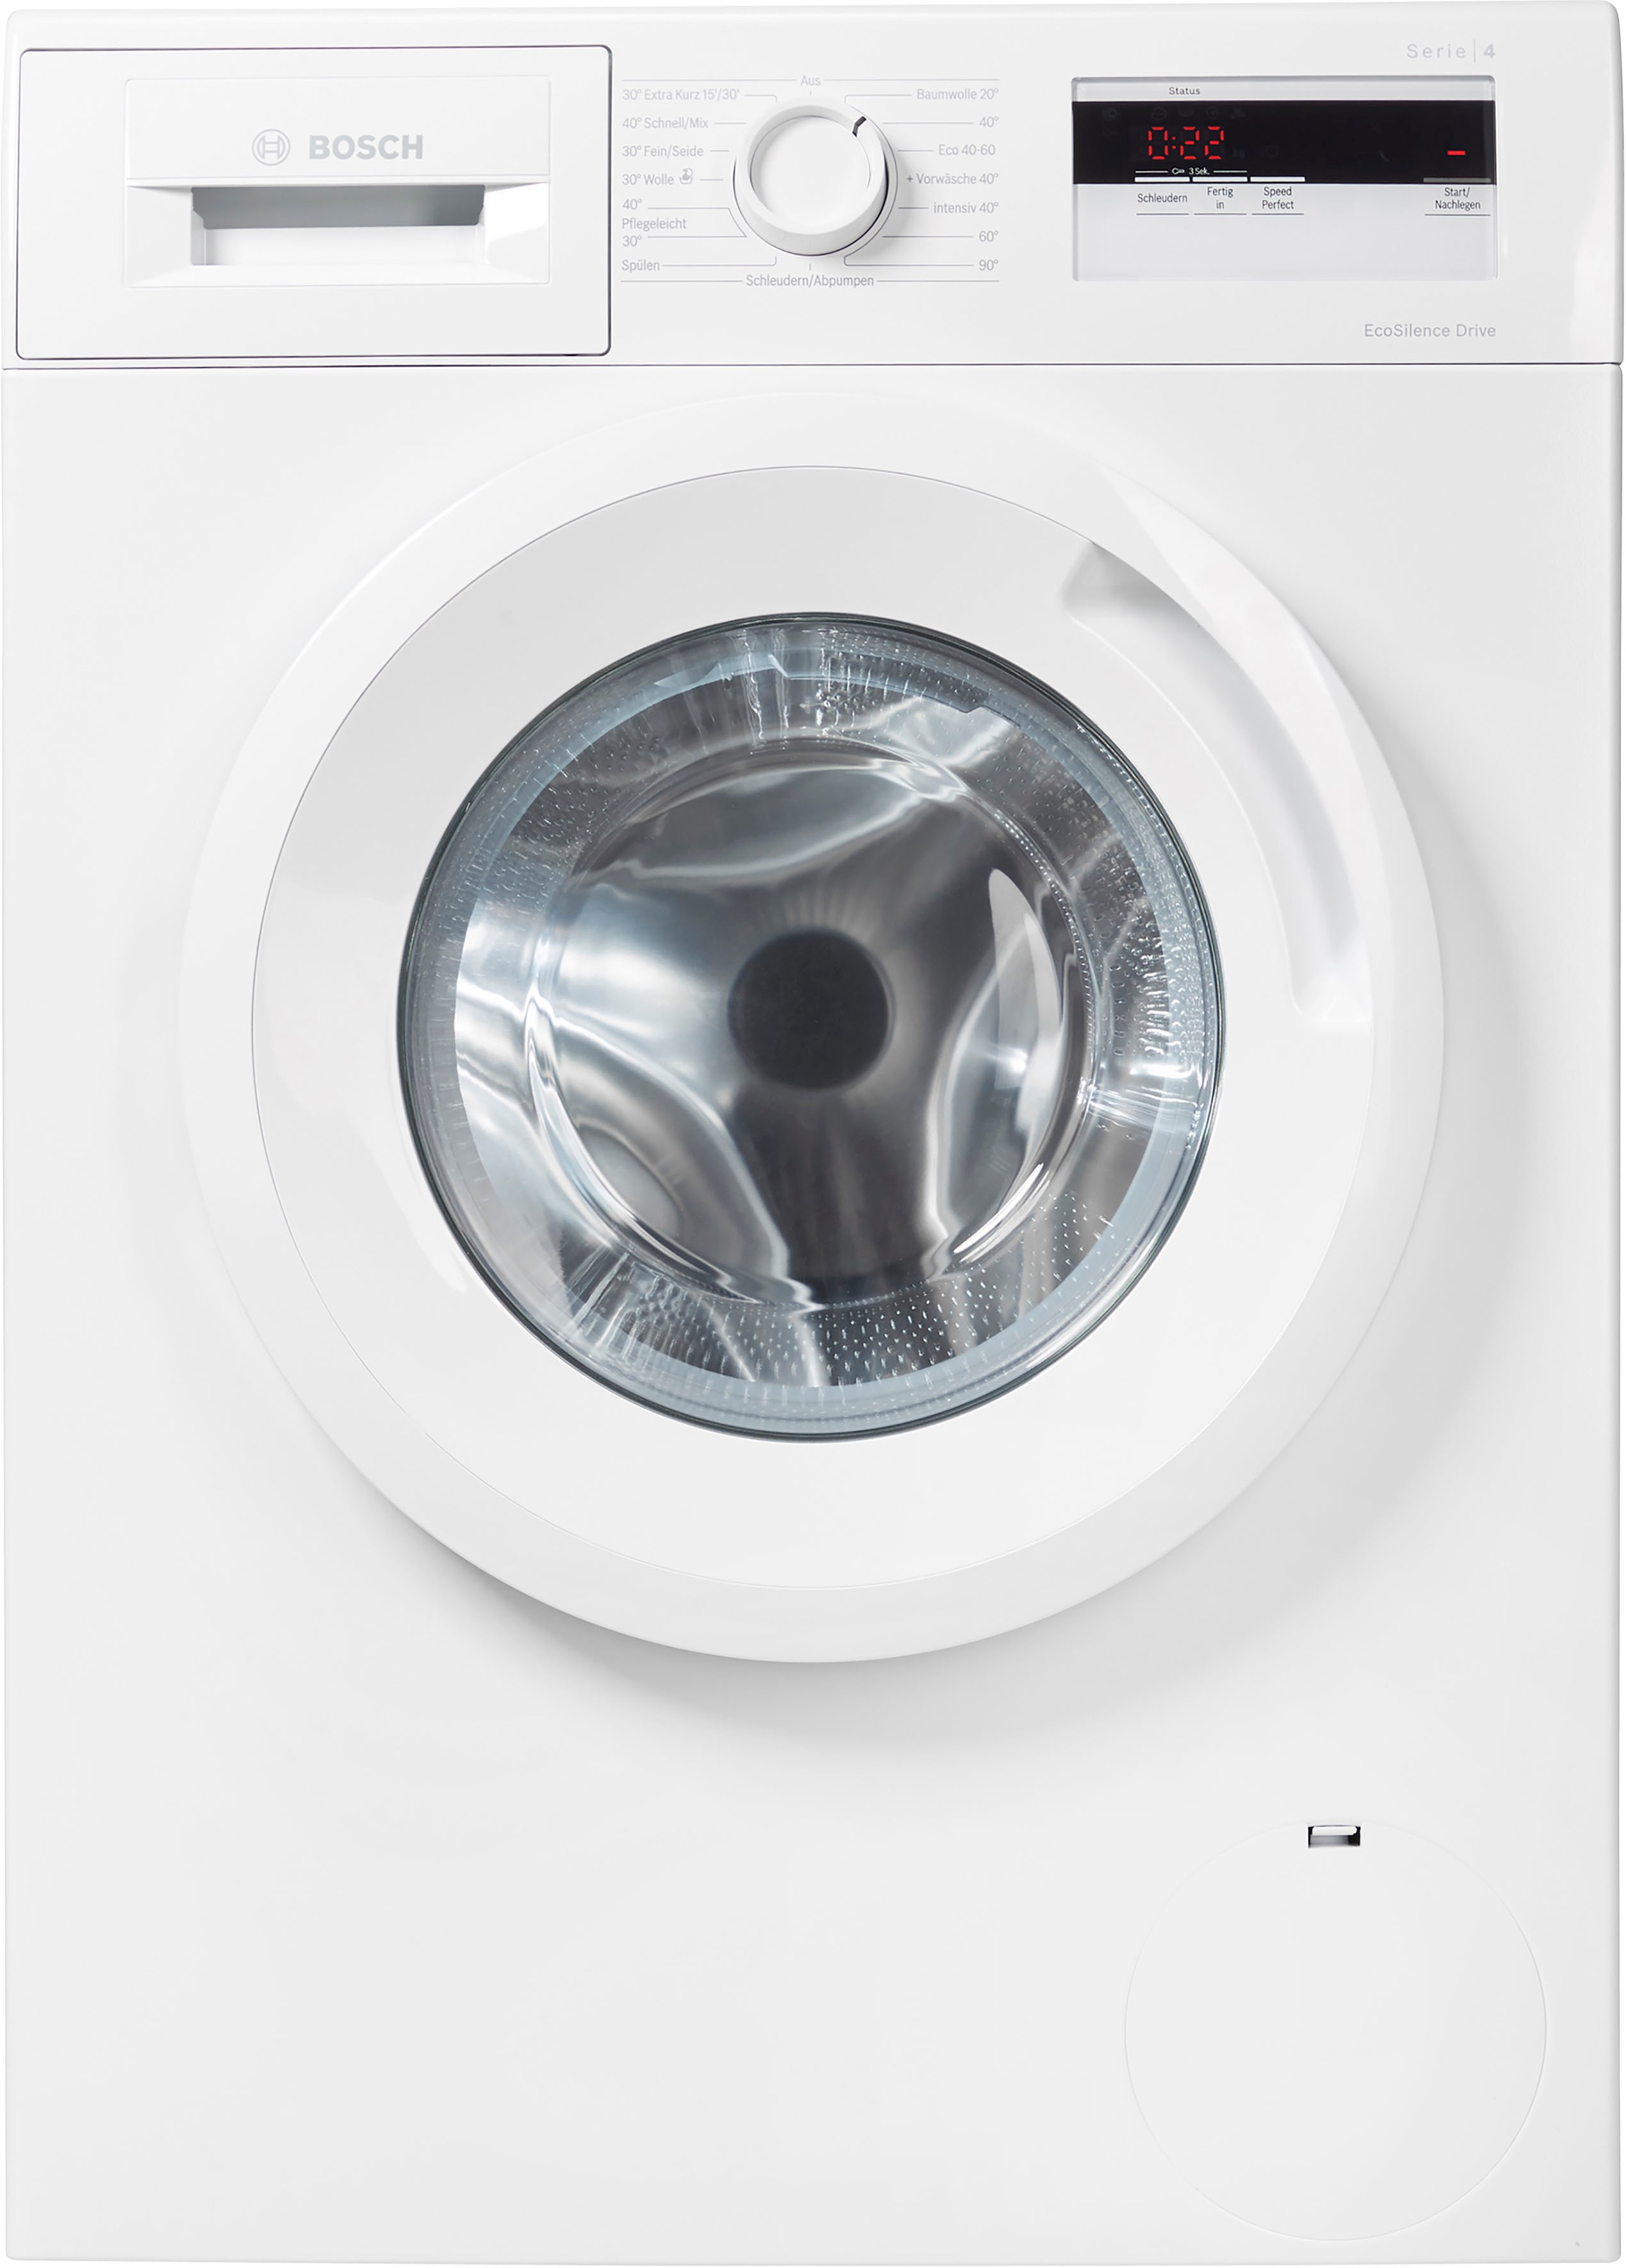 BOSCH Waschmaschine »WAN280A2«, 4, U/min WAN280A2, 1400 online kaufen kg, 7